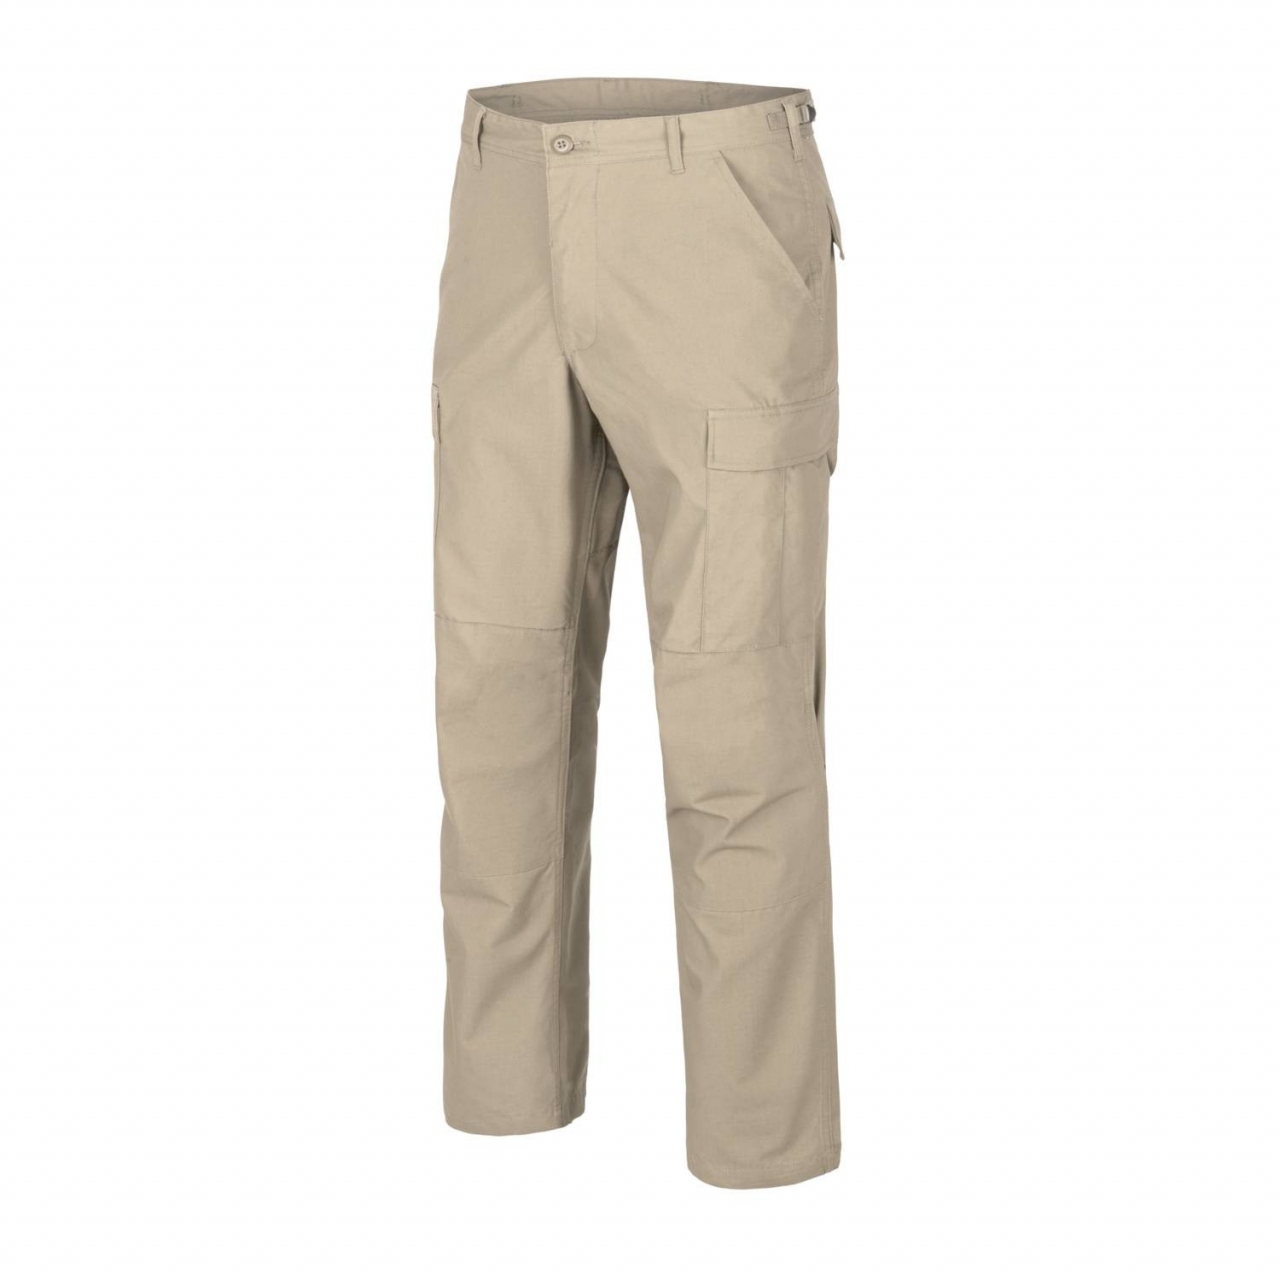 Kalhoty Helikon BDU Pants Ripstop - béžové, XL